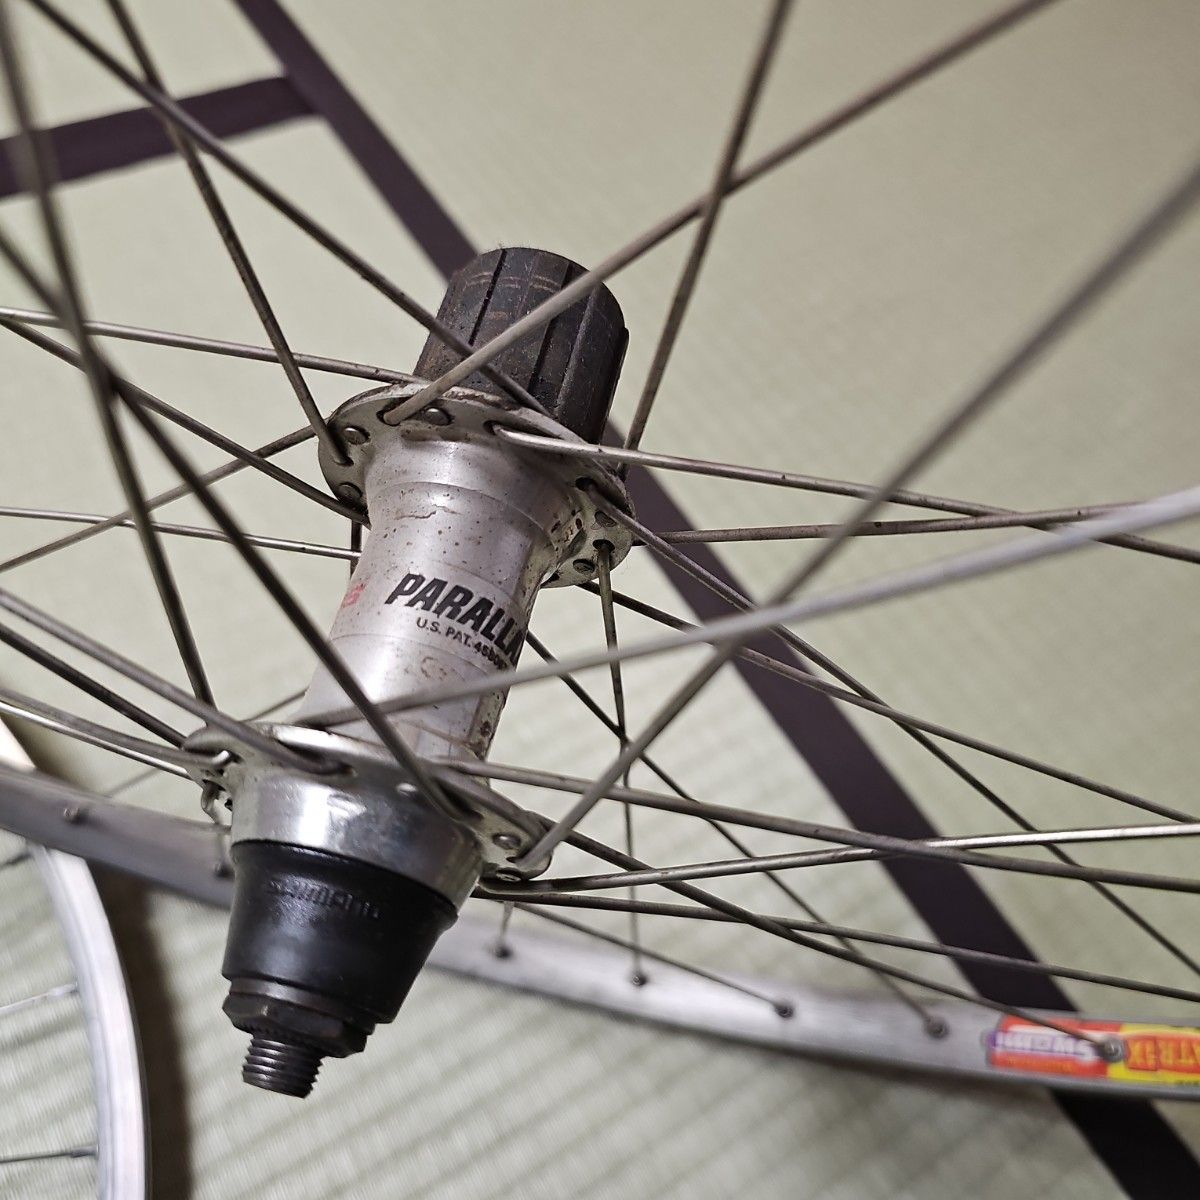 【平成レトロ/1990年代後半?】SHIMANO製品 自転車ホイール